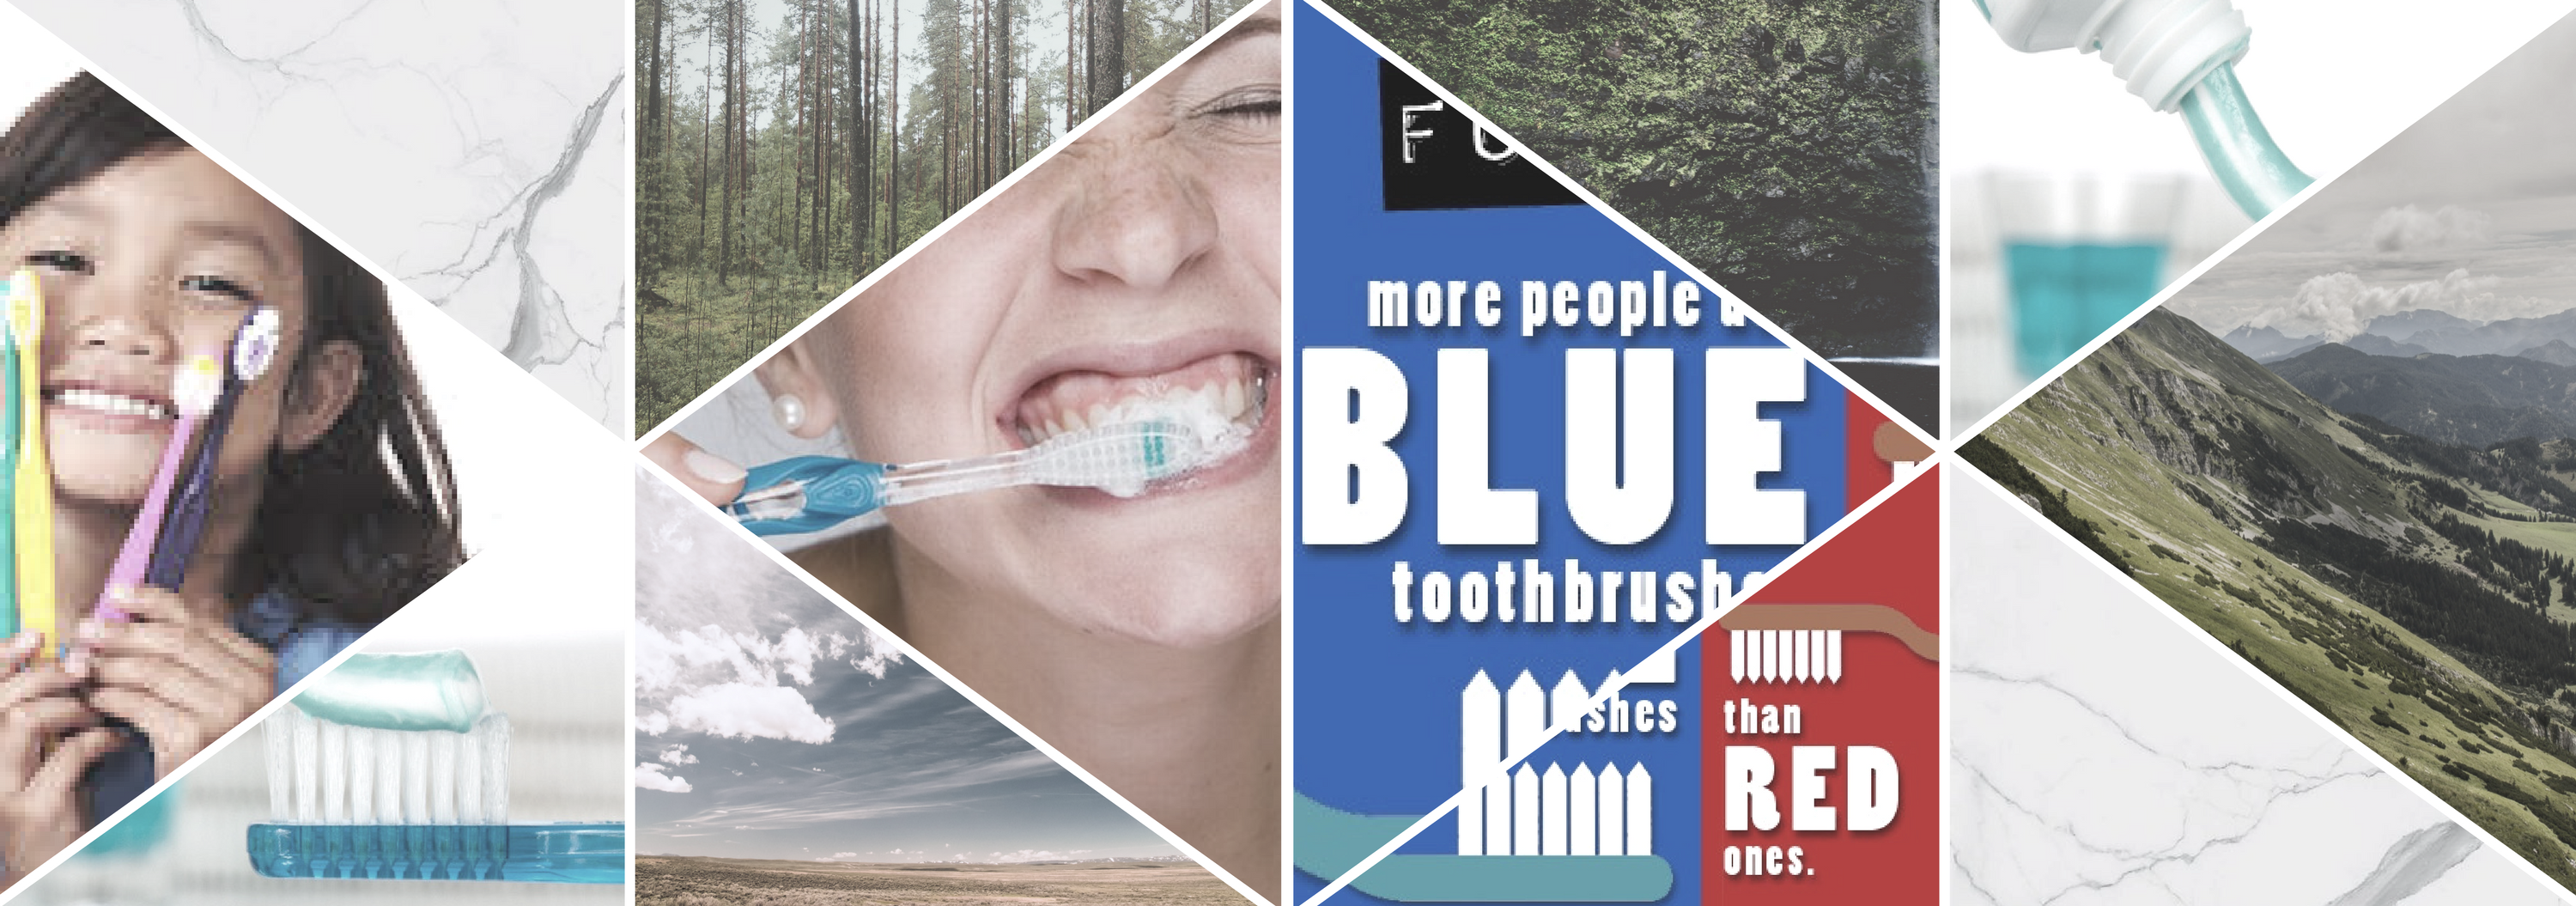 Результат пошуку зображень за запитом "зубная щетка синяя красная"